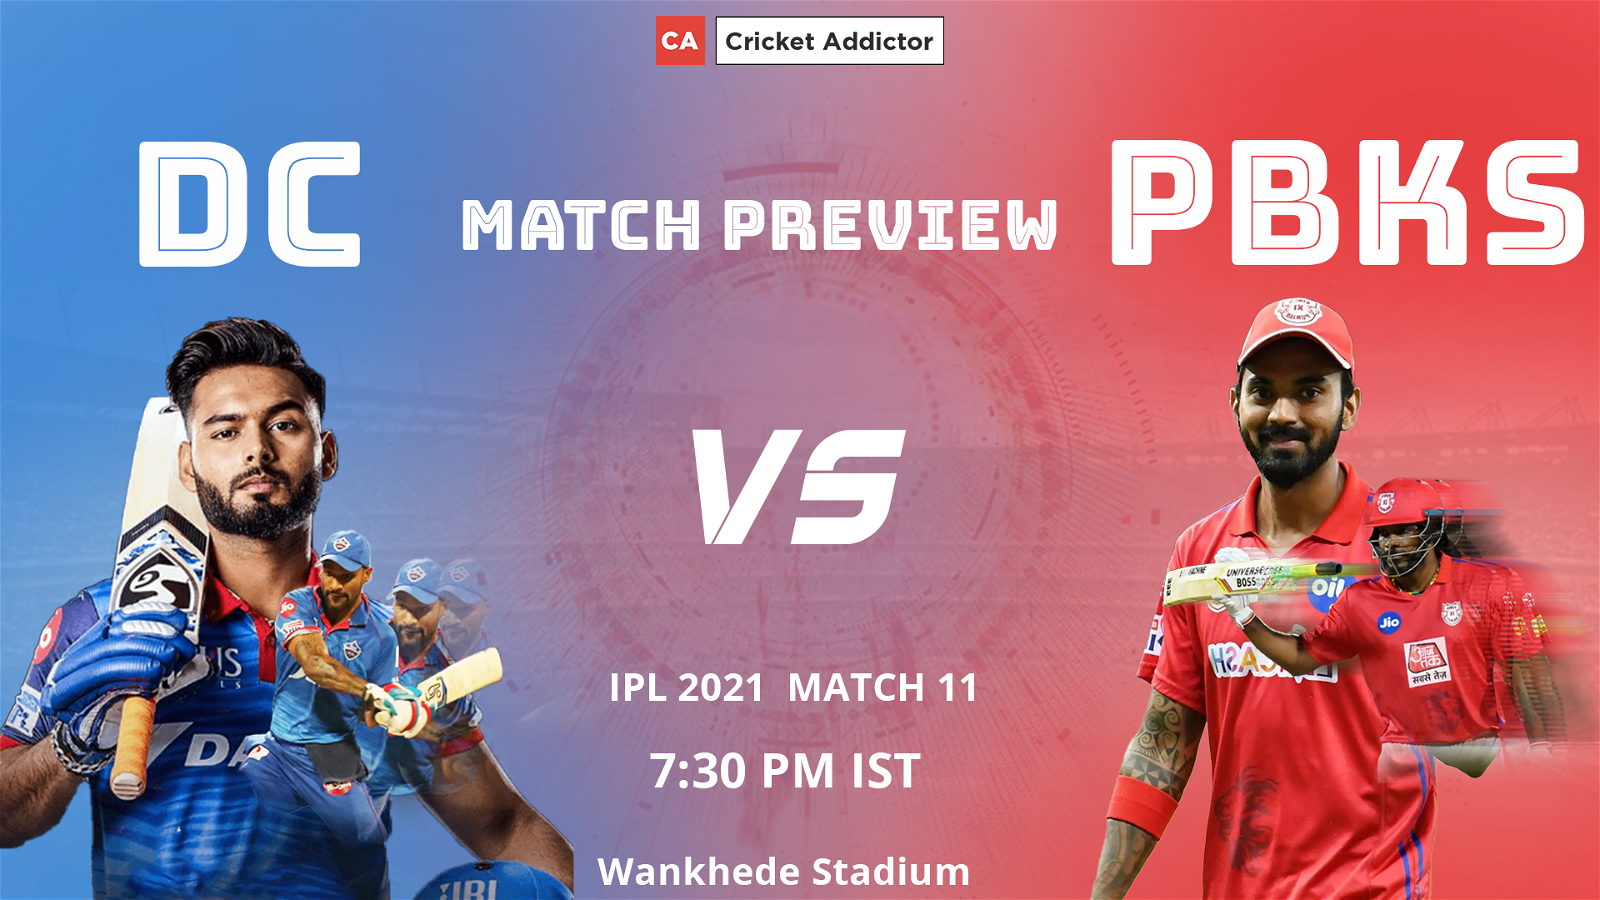 IPL 2021, Delhi Capitals, Punjab Kings, Match Preview, Prediction, DC vs PBKS